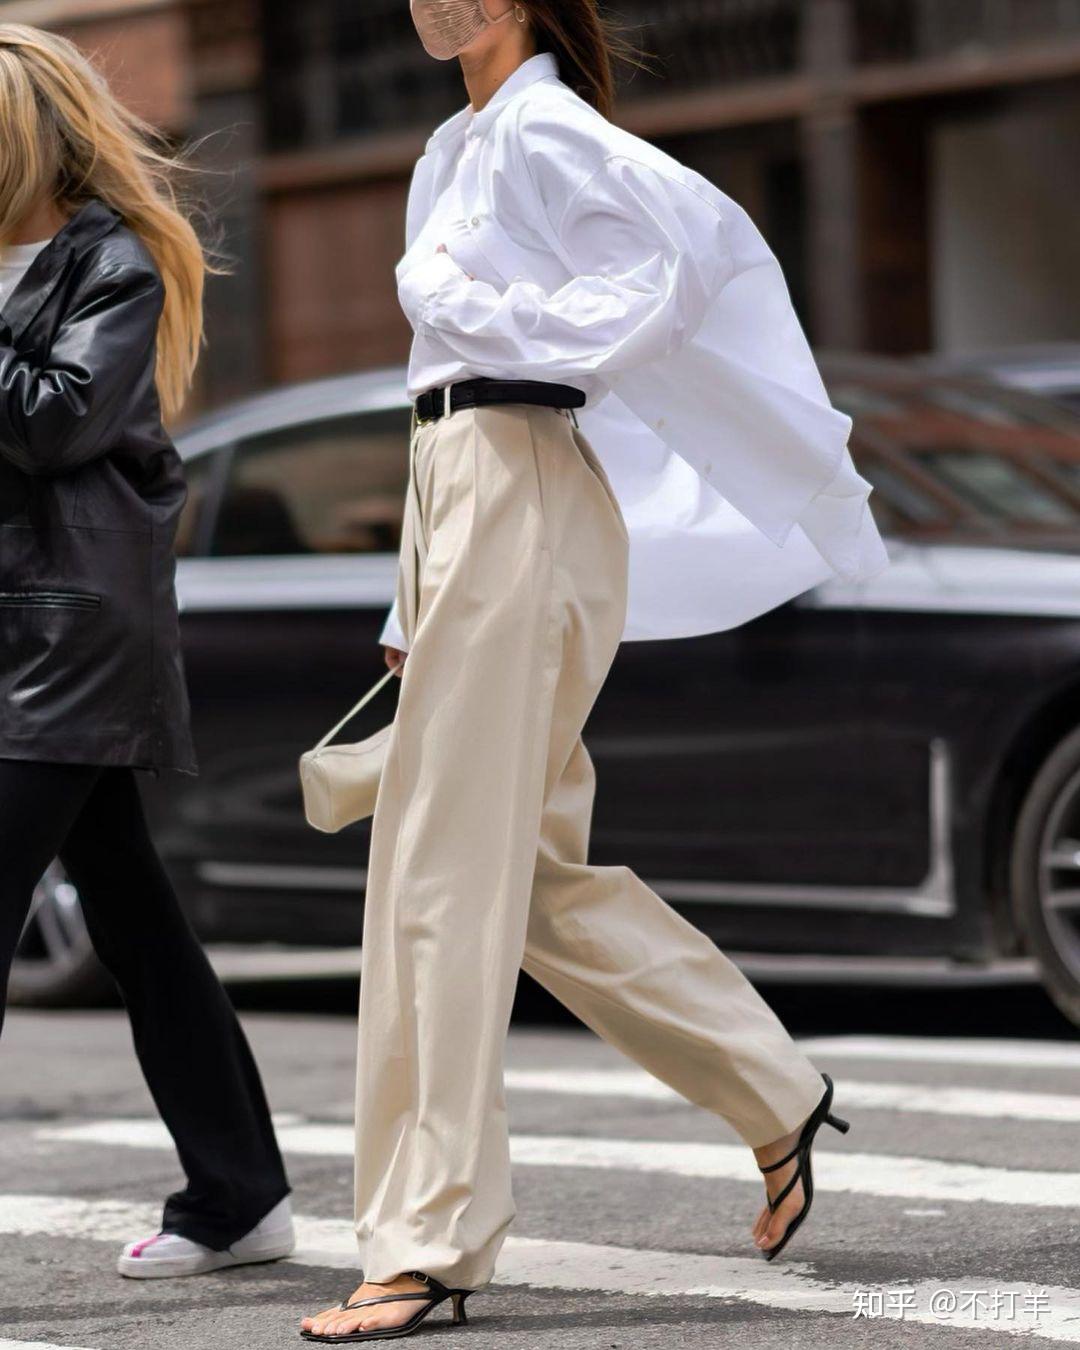 look 1:超大oversized白衬衫 卡其色阔腿裤 系带高跟鞋肯达尔·詹娜